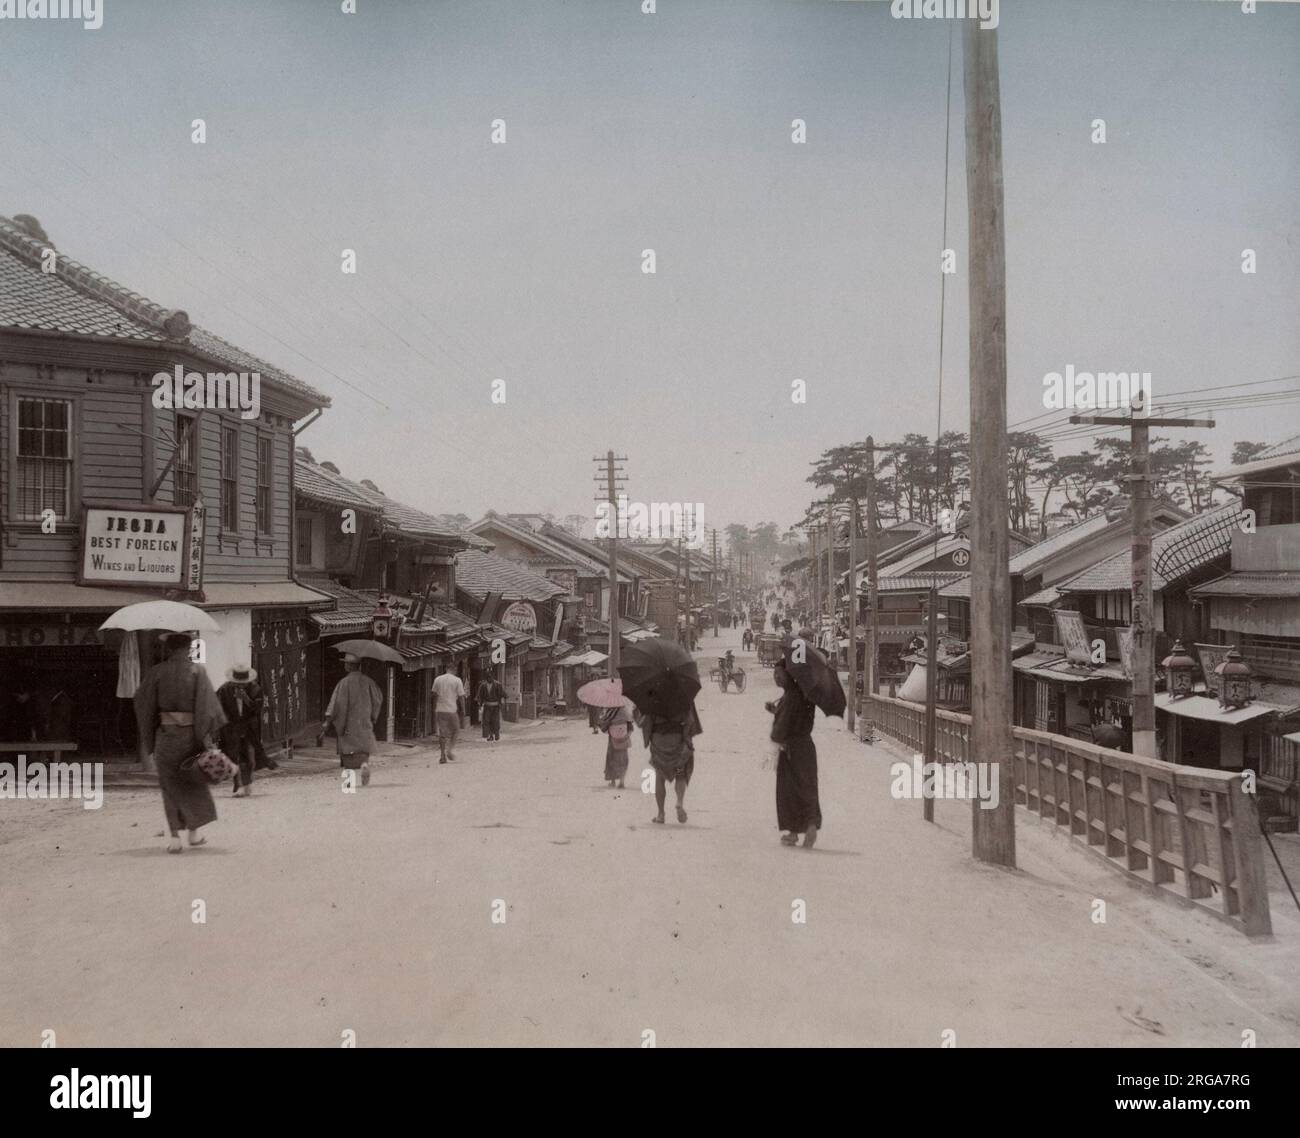 Street scene in Giappone, mostra un negozio di vini stranieri. Vintage 19th ° secolo fotografia.. Foto Stock